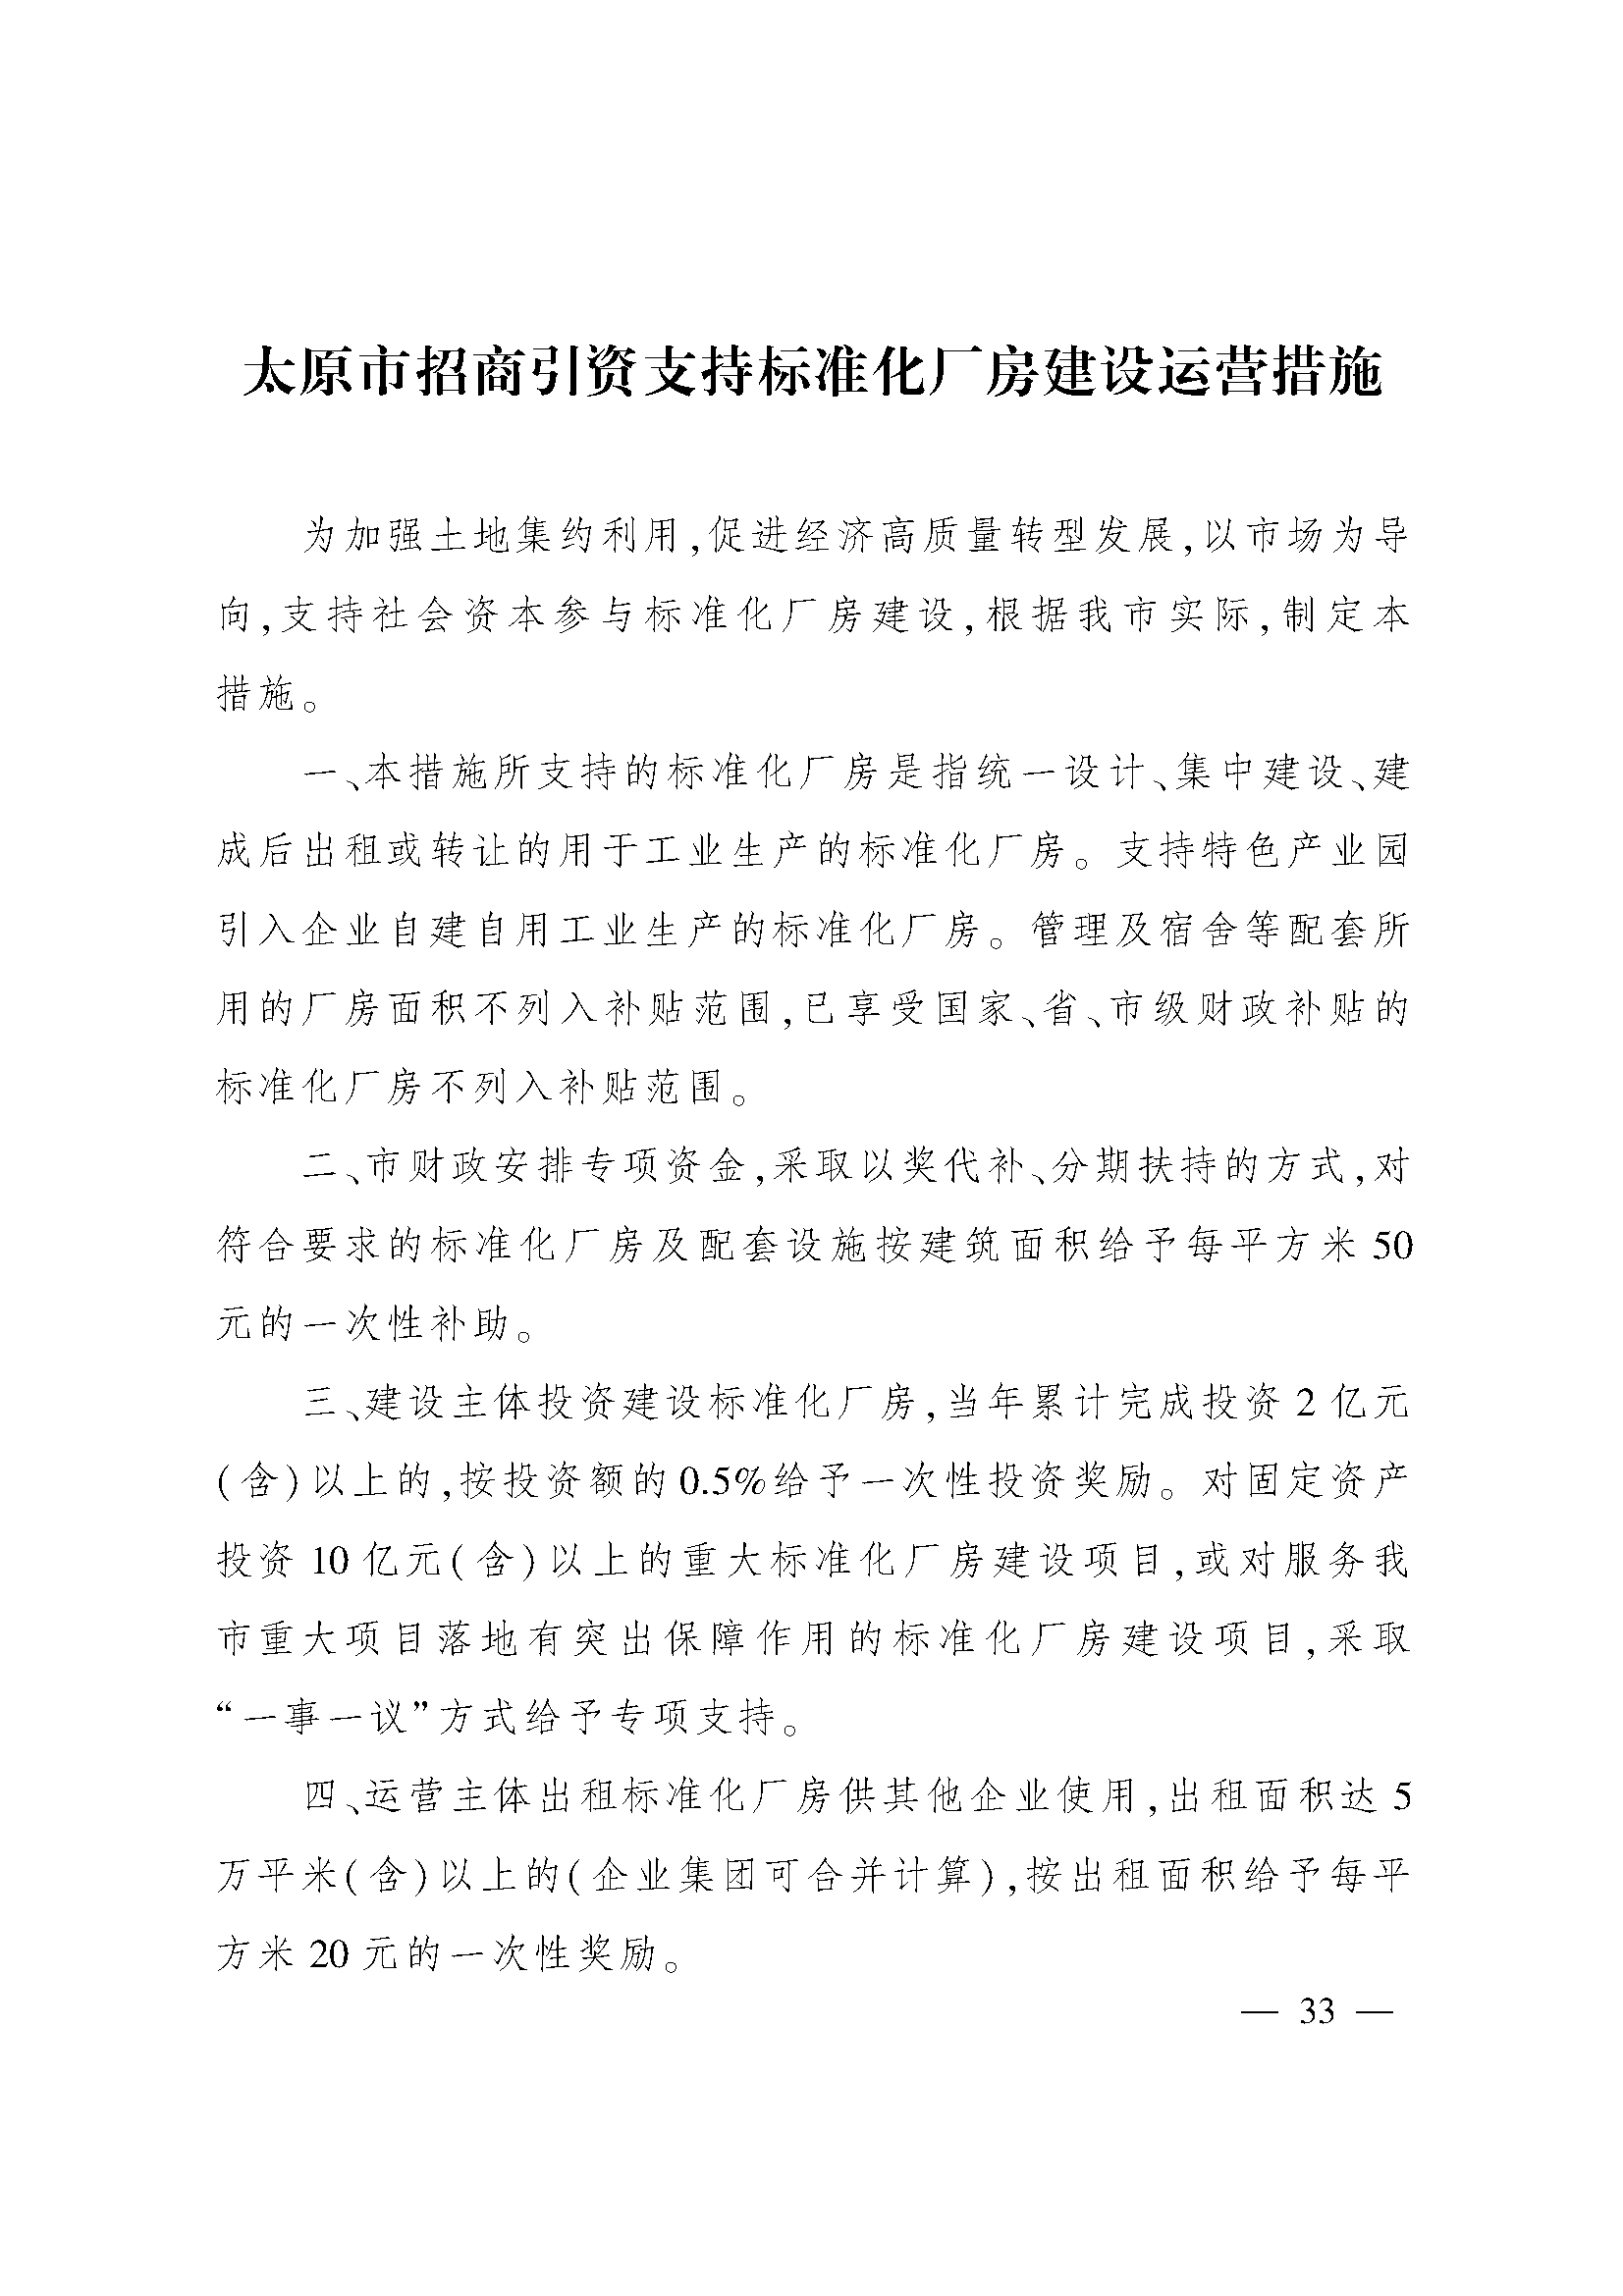 太原市人民政府办公室关于印发太原市招商引资若干措施的通知(图33)